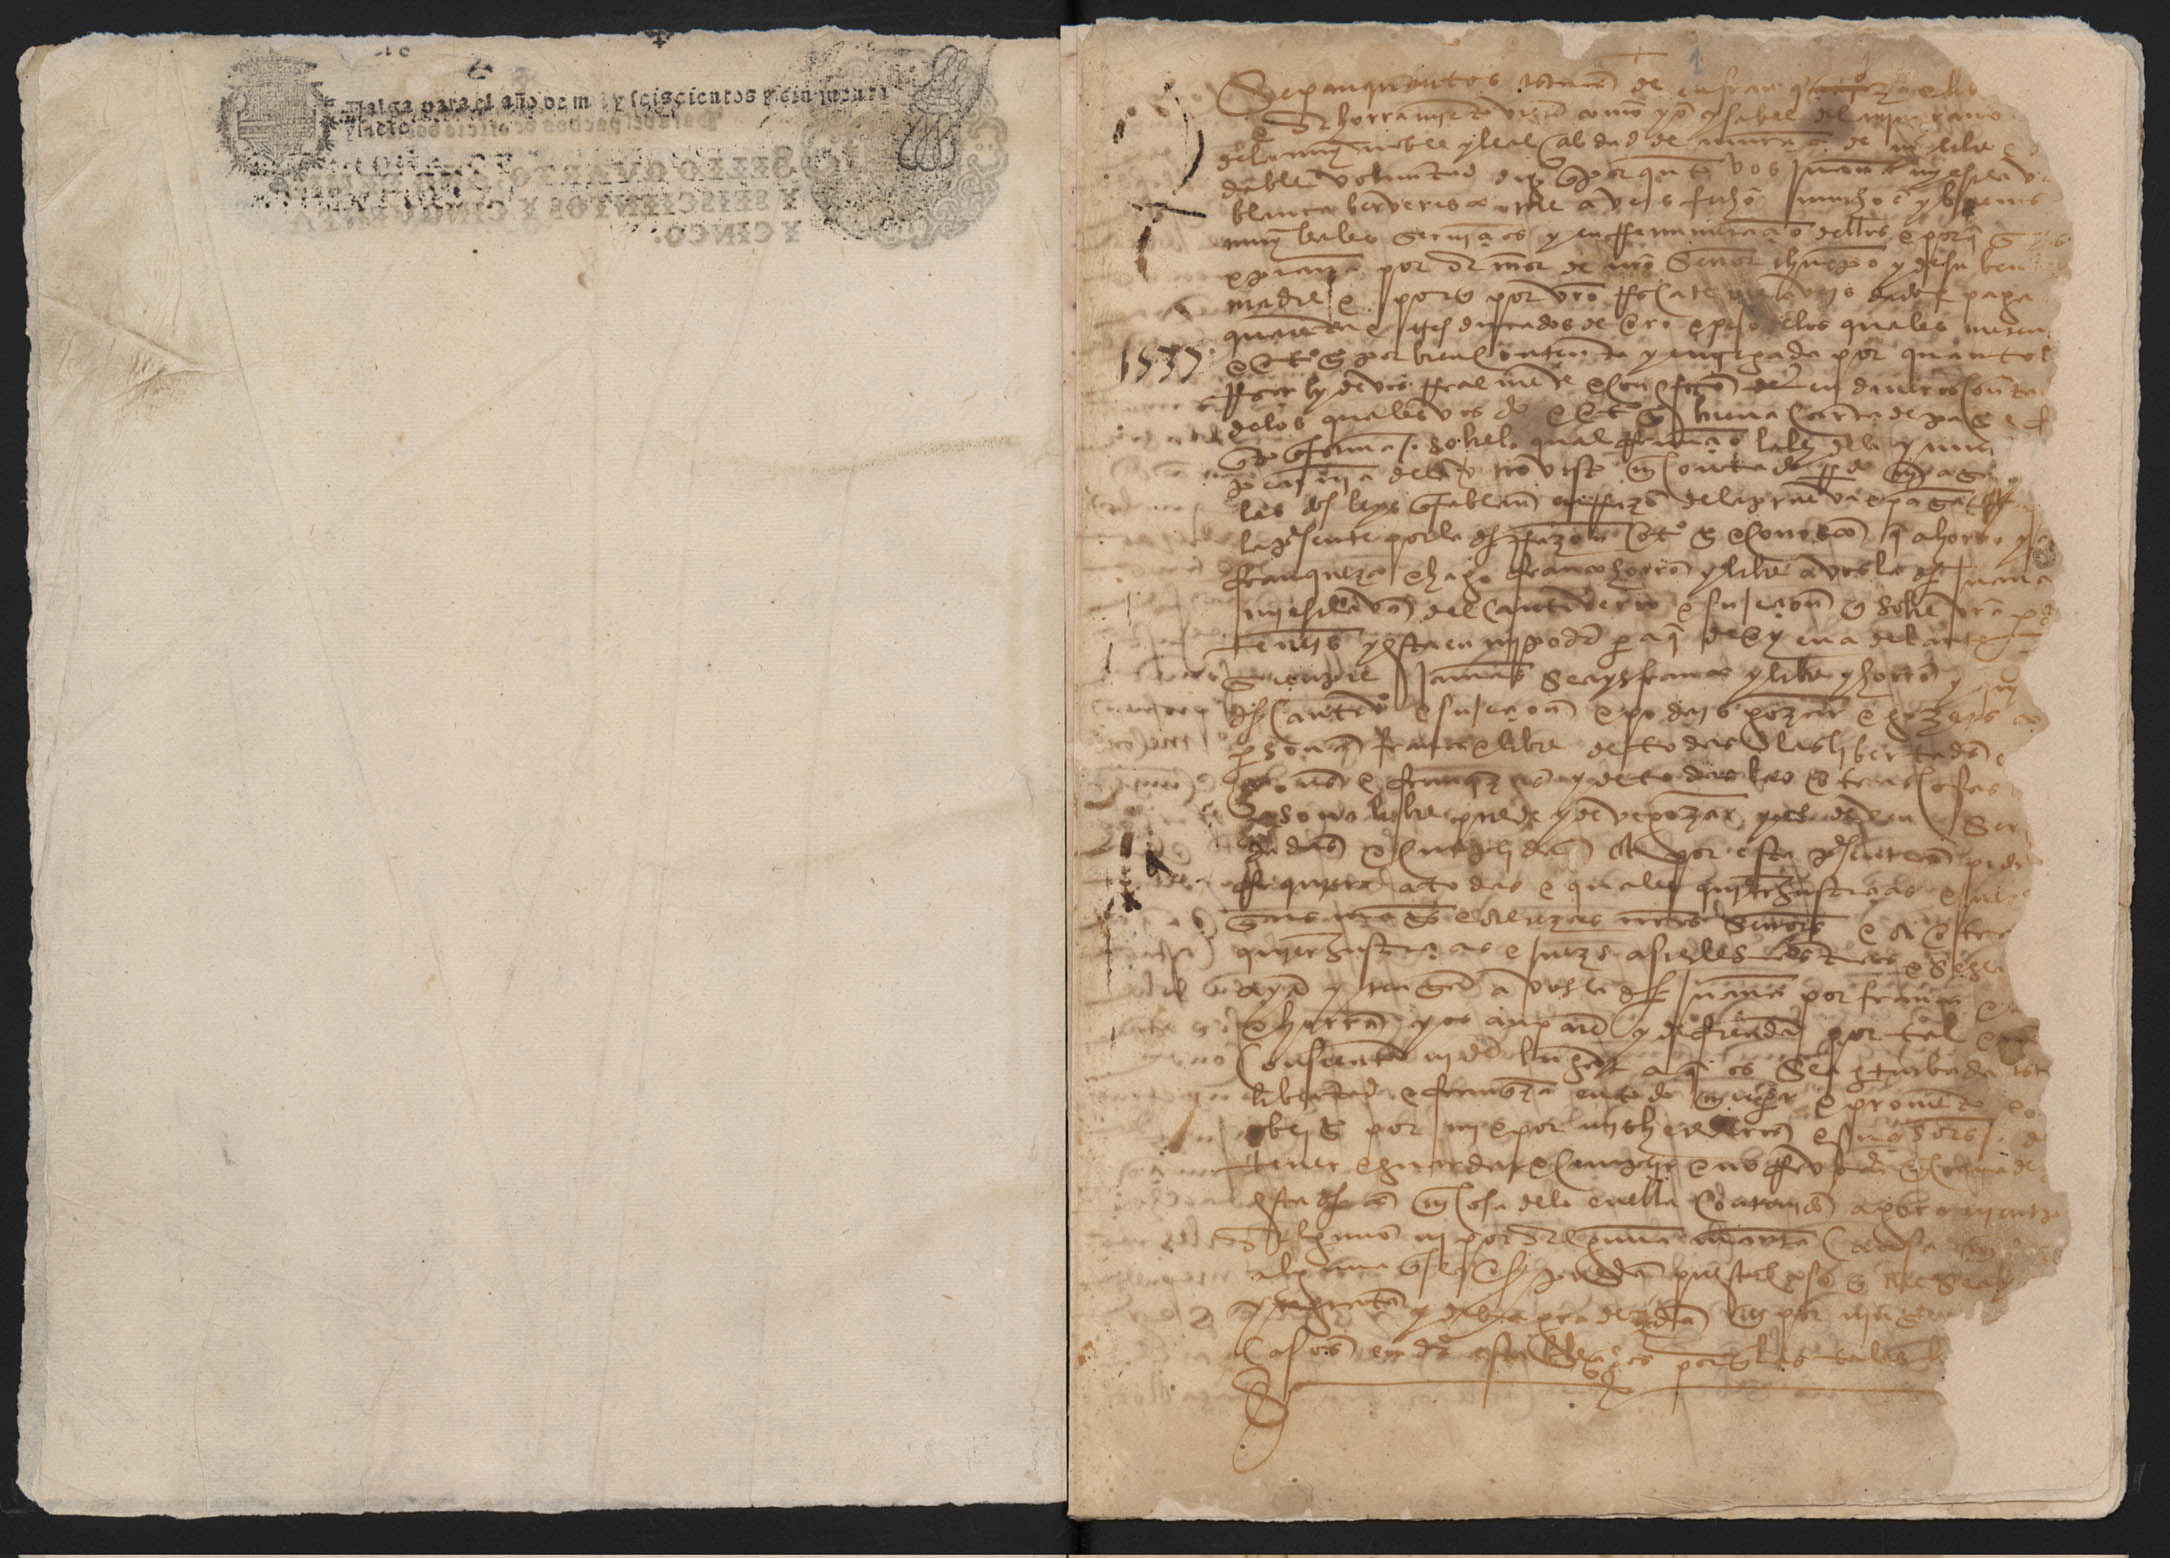 Registro de Martín Faura, Murcia de 1537 (minutas).